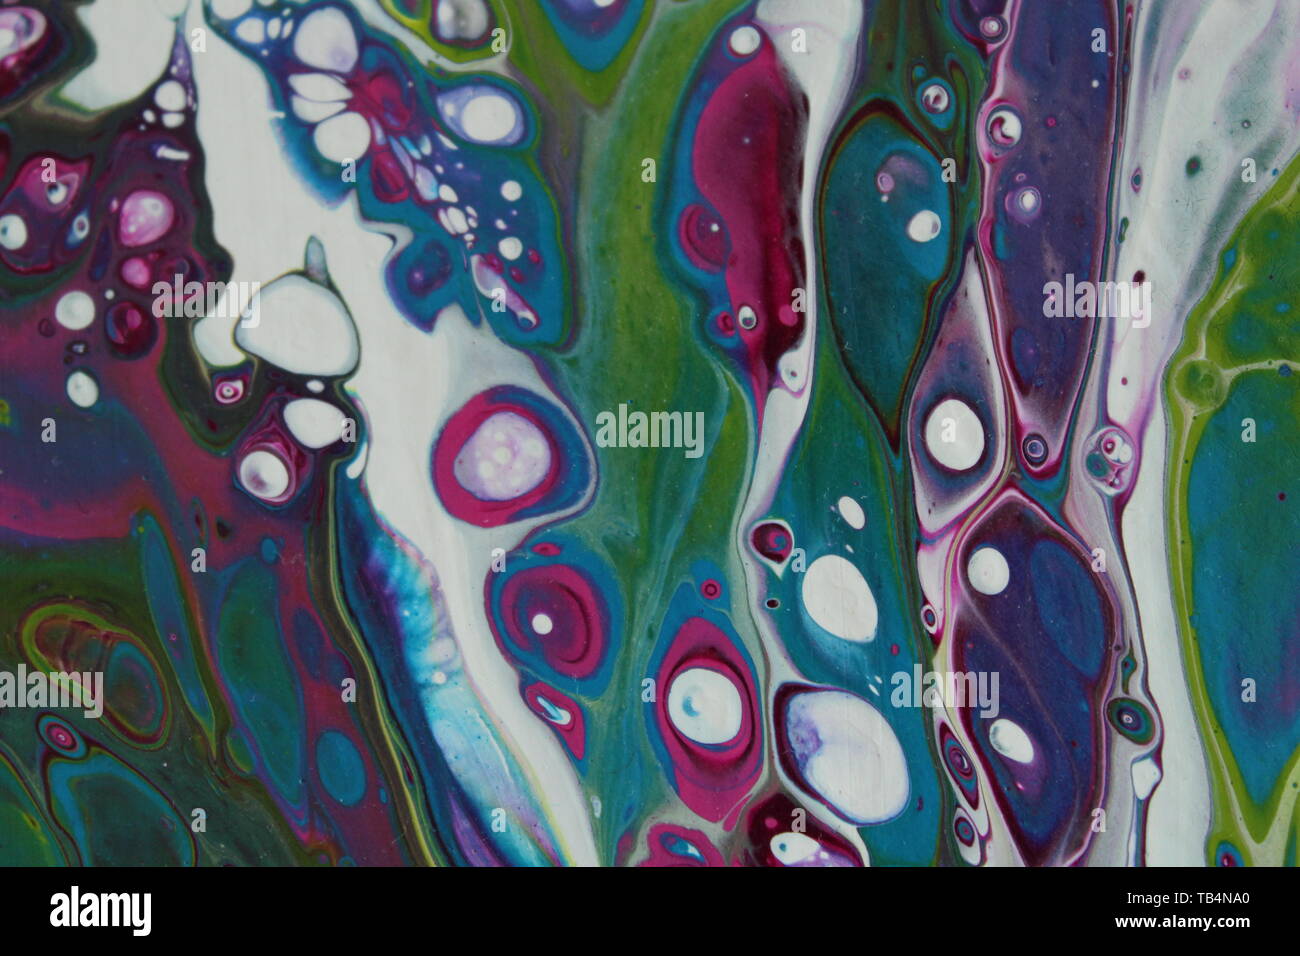 Arrière-plan d'un gros plan sur une section d'un acrylique abstrait peinture pour c'est fait dans la sarcelle, vert, violet, magenta et blanc. Banque D'Images